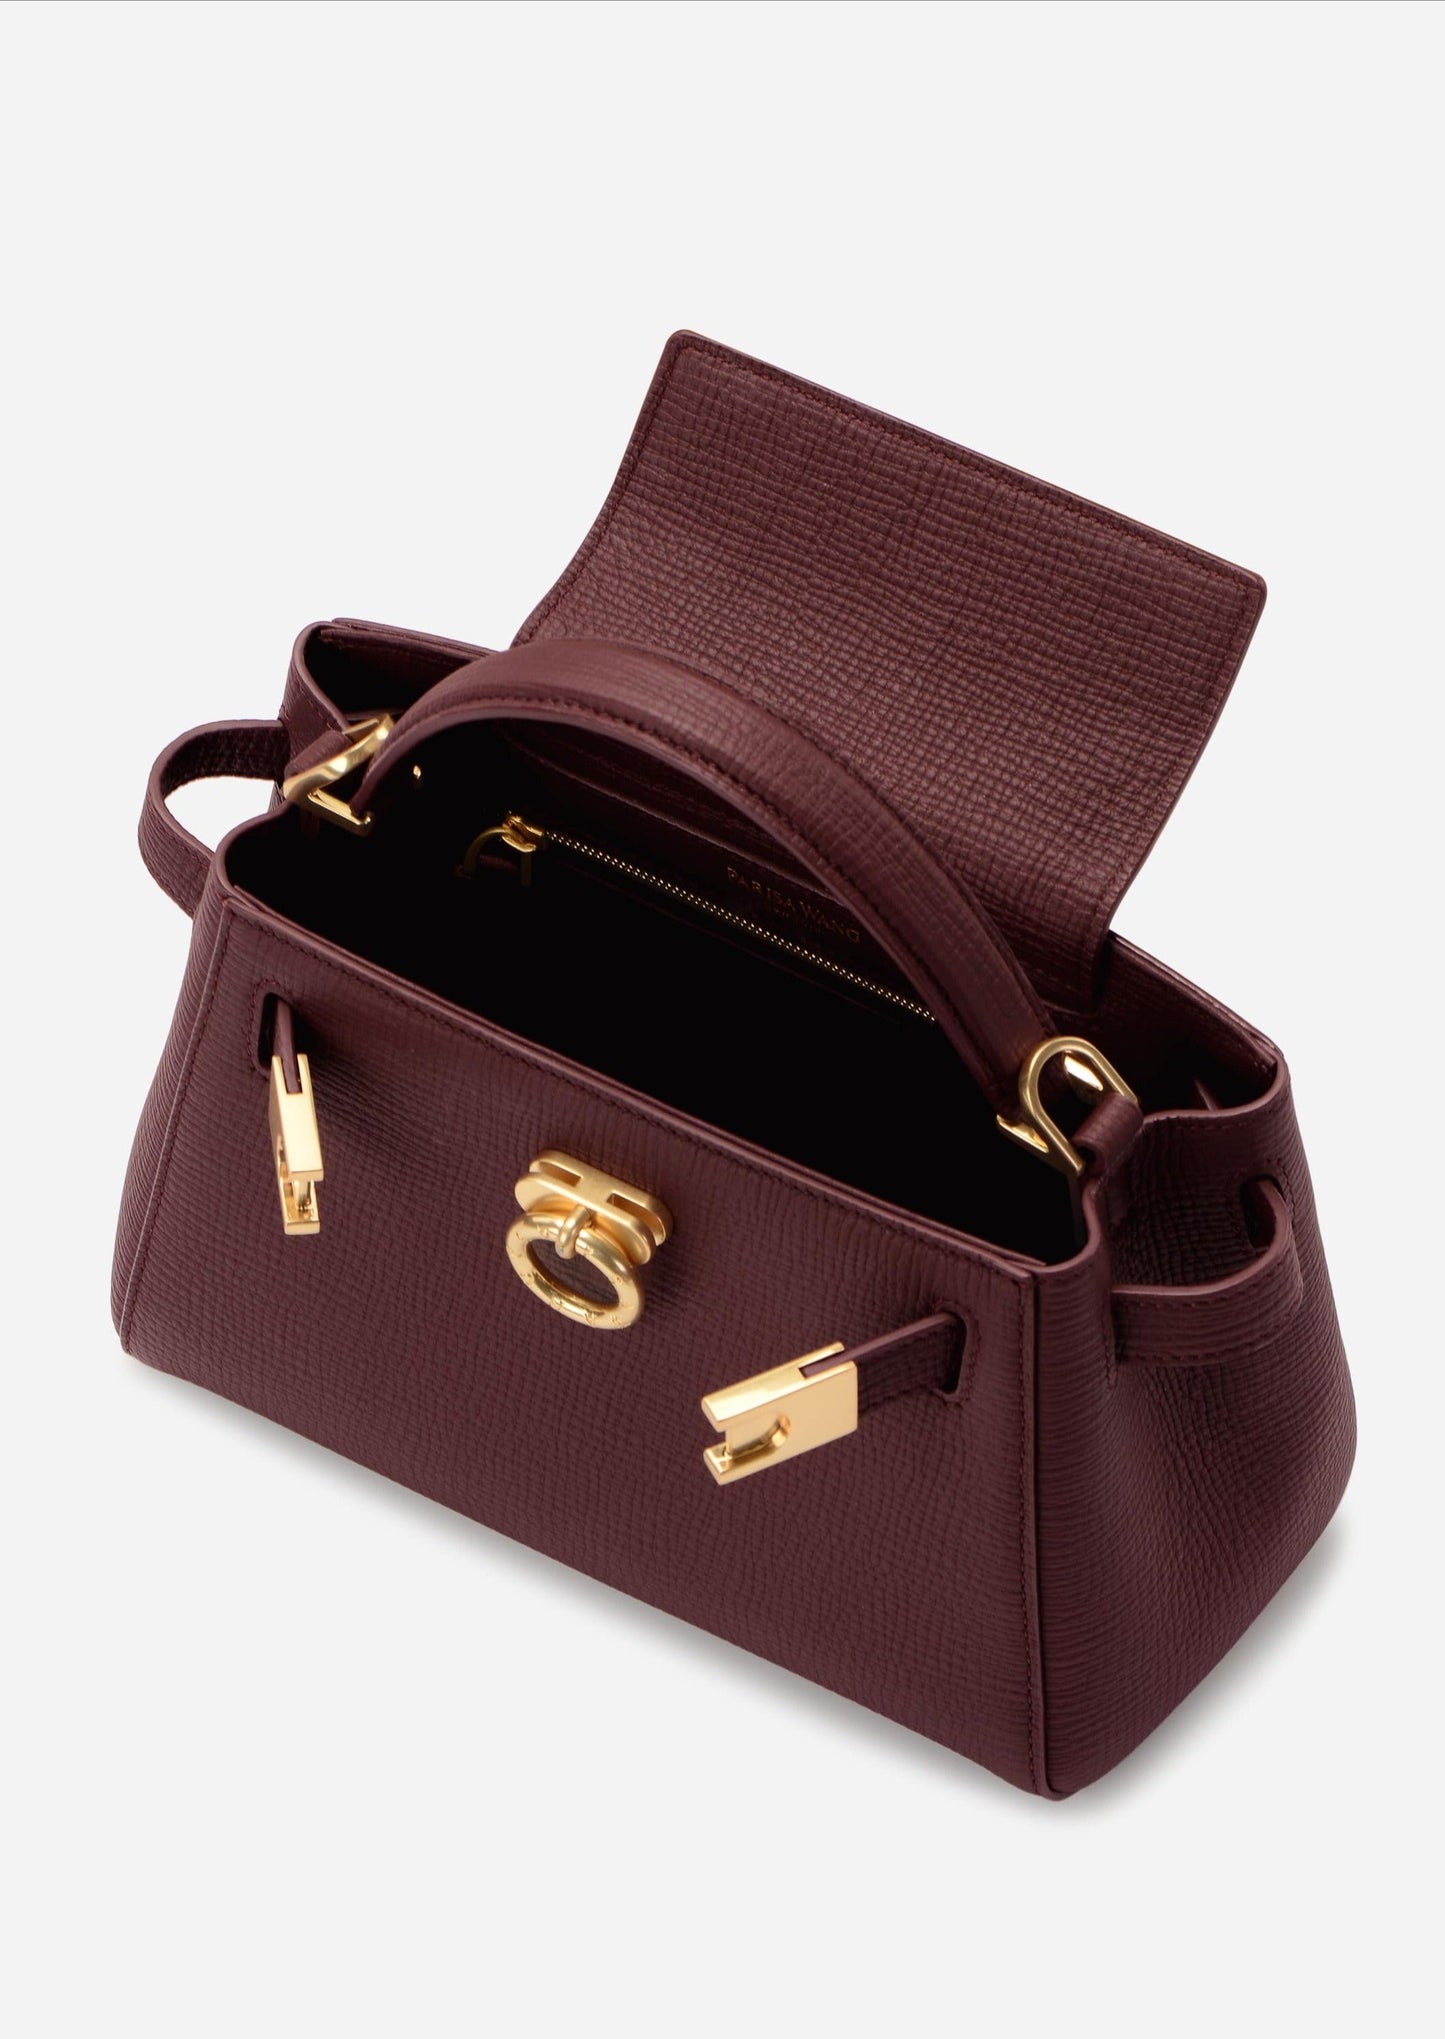 Madison Micro Top Handle Bag